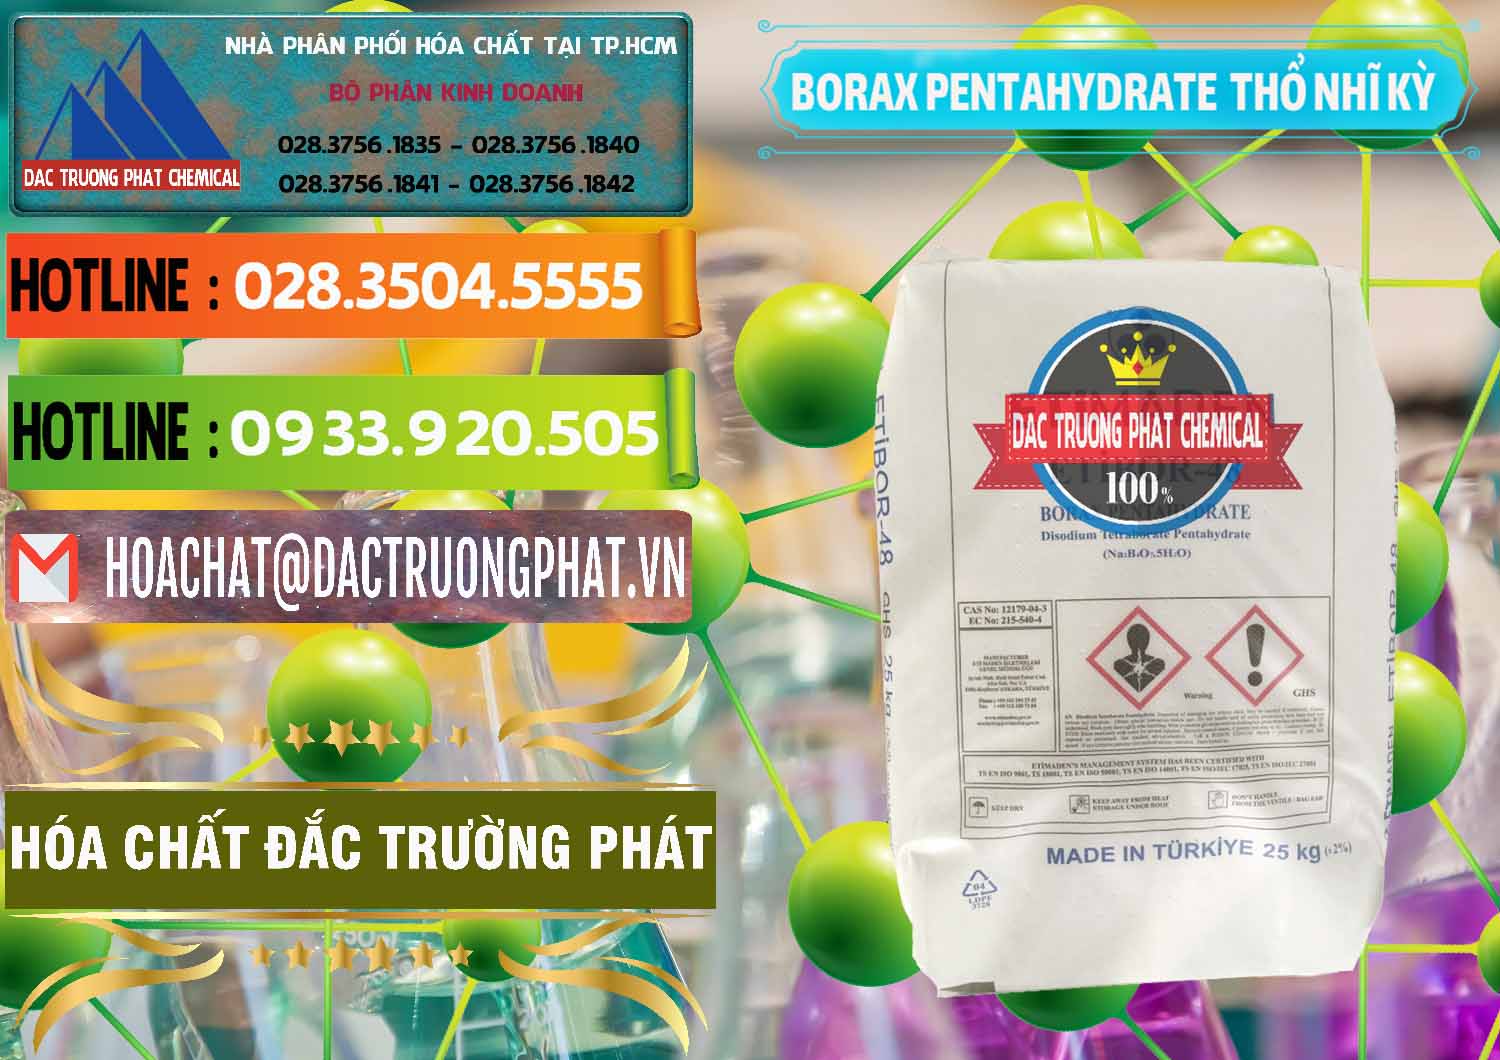 Nơi chuyên cung cấp ( bán ) Borax Pentahydrate Thổ Nhĩ Kỳ Turkey - 0431 - Đơn vị chuyên nhập khẩu ( cung cấp ) hóa chất tại TP.HCM - cungcaphoachat.com.vn